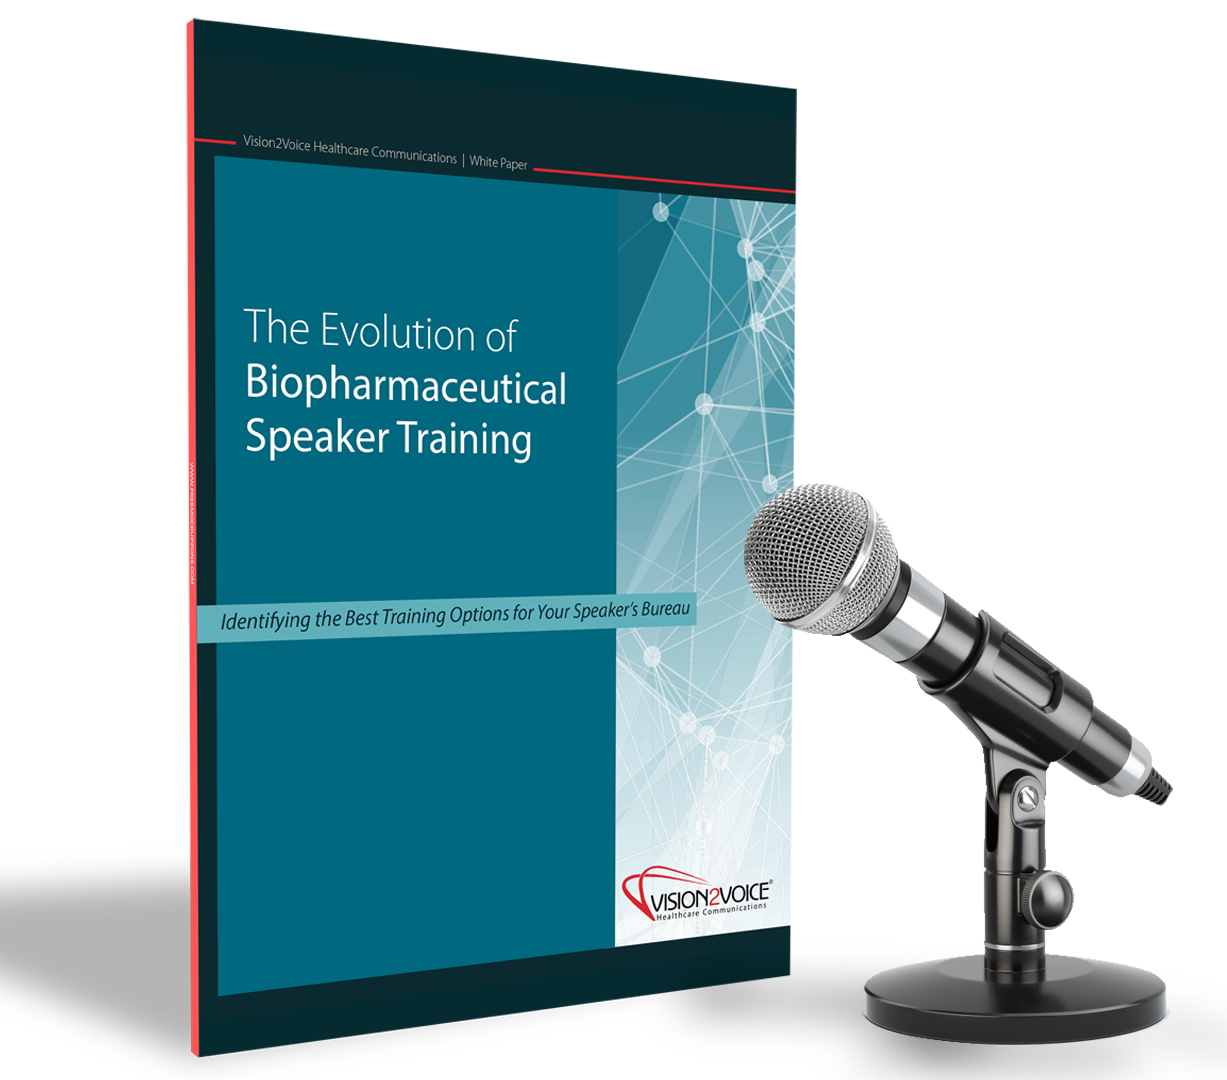 The Evolution of Biopharmaceutical Speaker Training